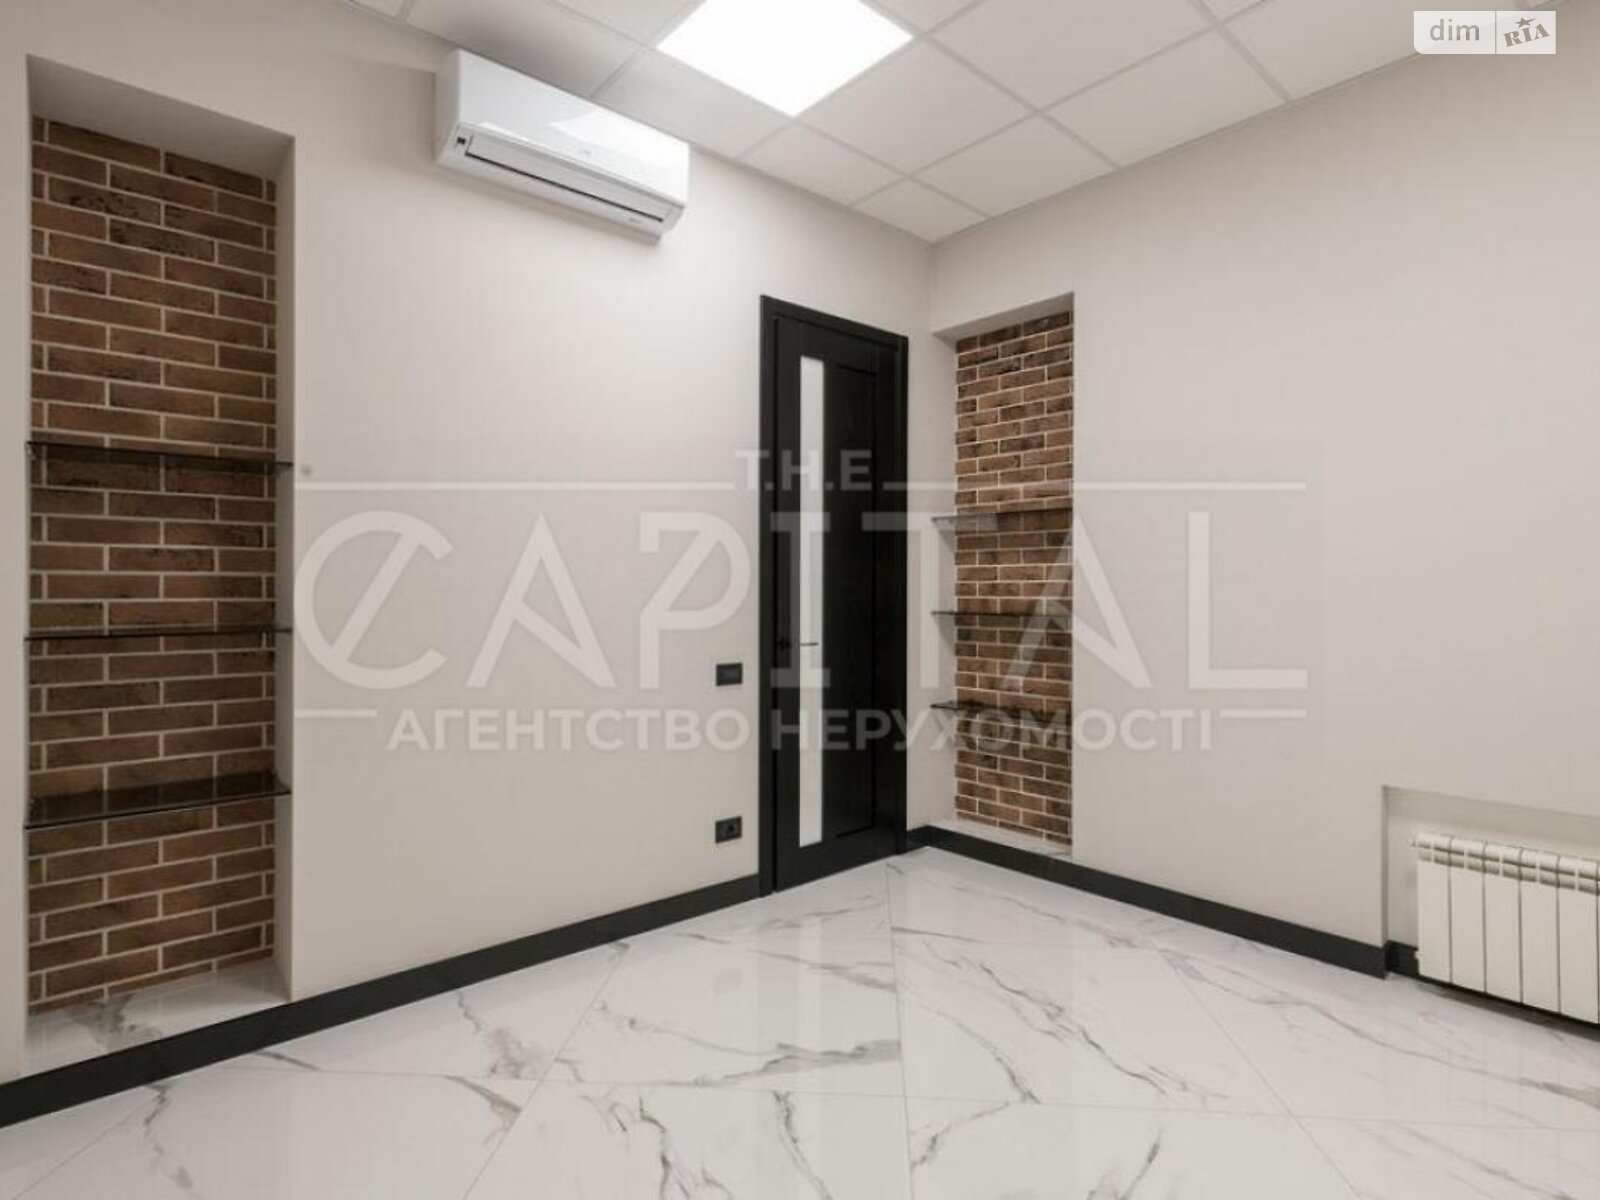 Аренда офисного помещения в Киеве, Пирогова улица, помещений -, этаж - 1 фото 1